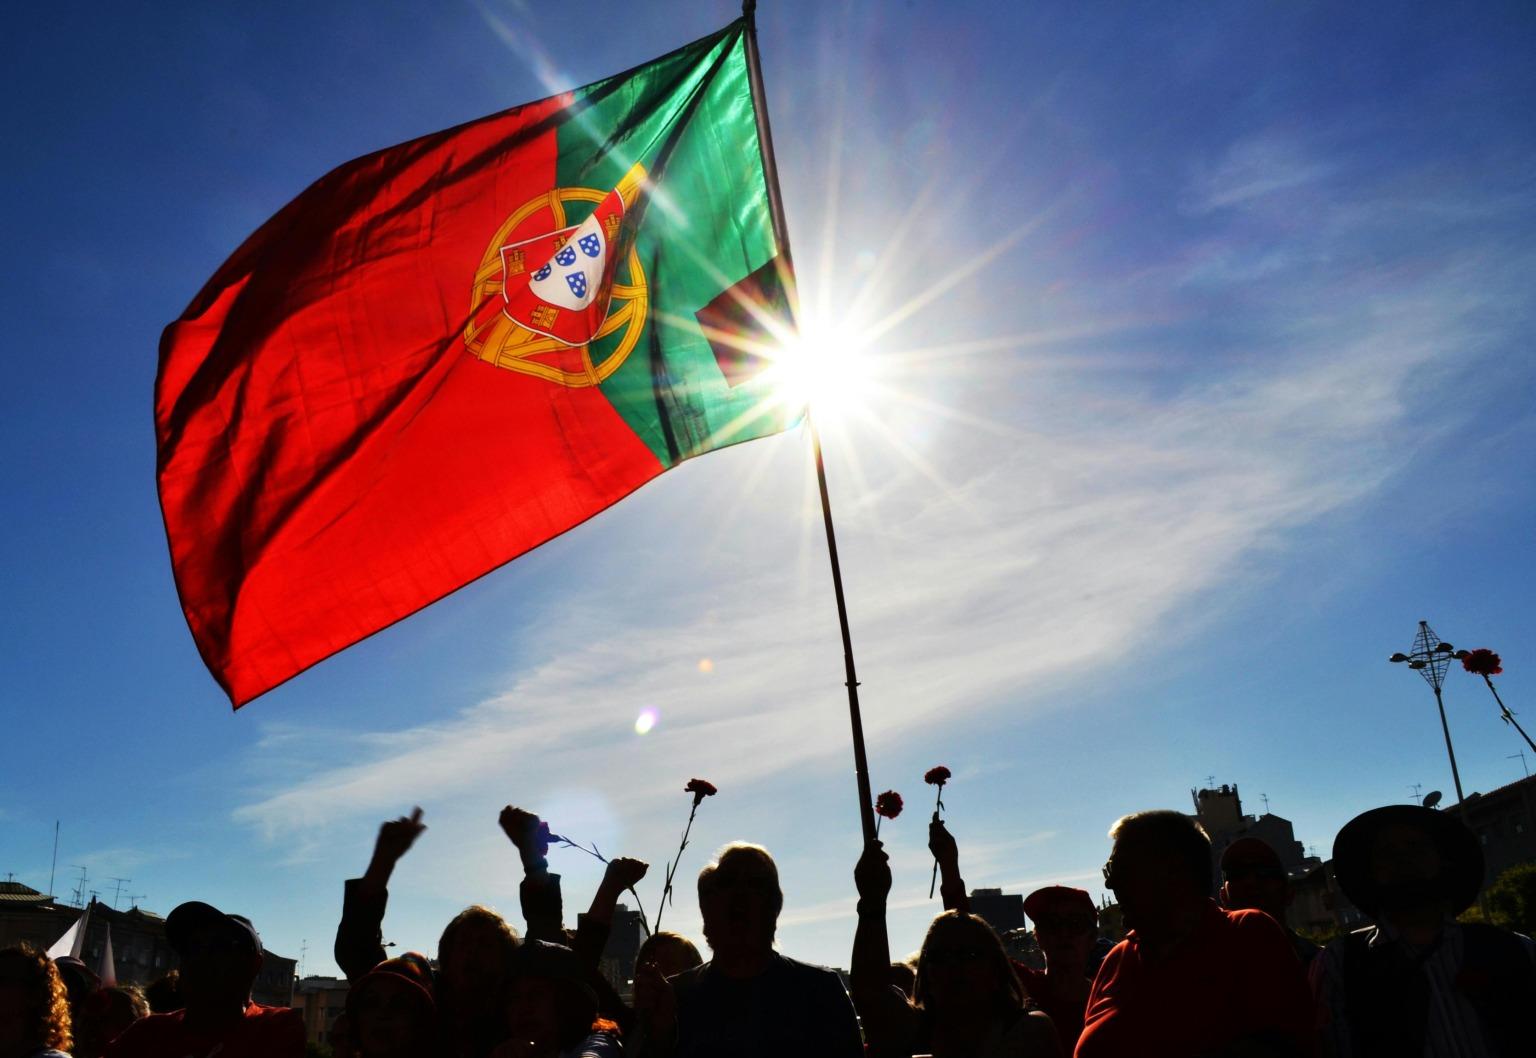 Bandeira portuguesa a tremular com pessoas a segurar cravos para celebrar a Revolução dos Cravos